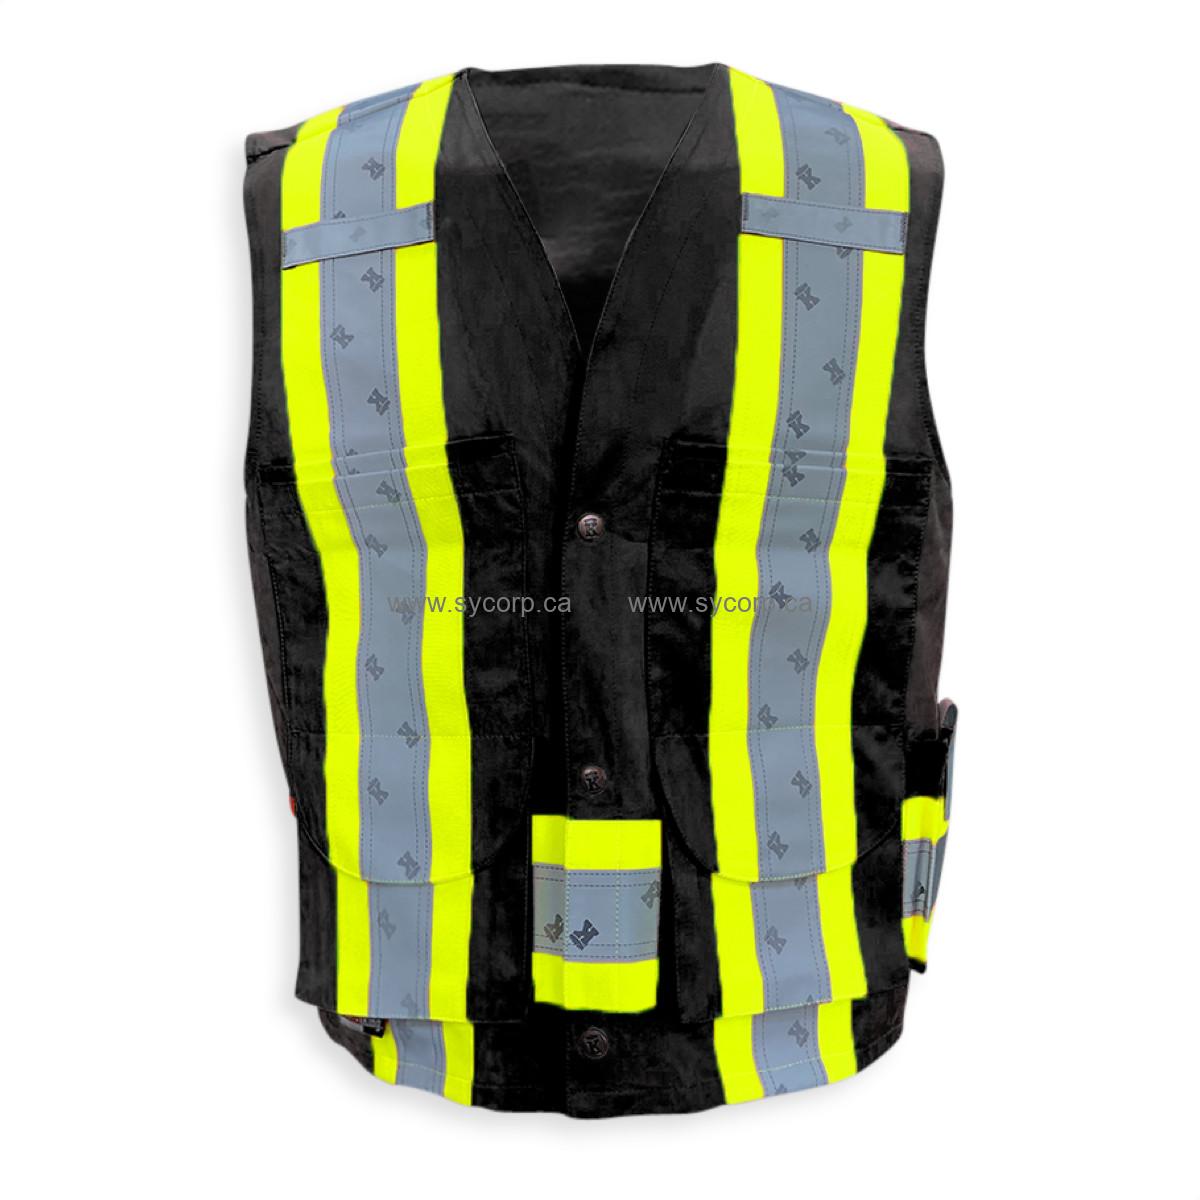 Big K BK222BLK 100% Cotton Black Supervisor Safety Vest, Black, Large  (BK222BLK-L)